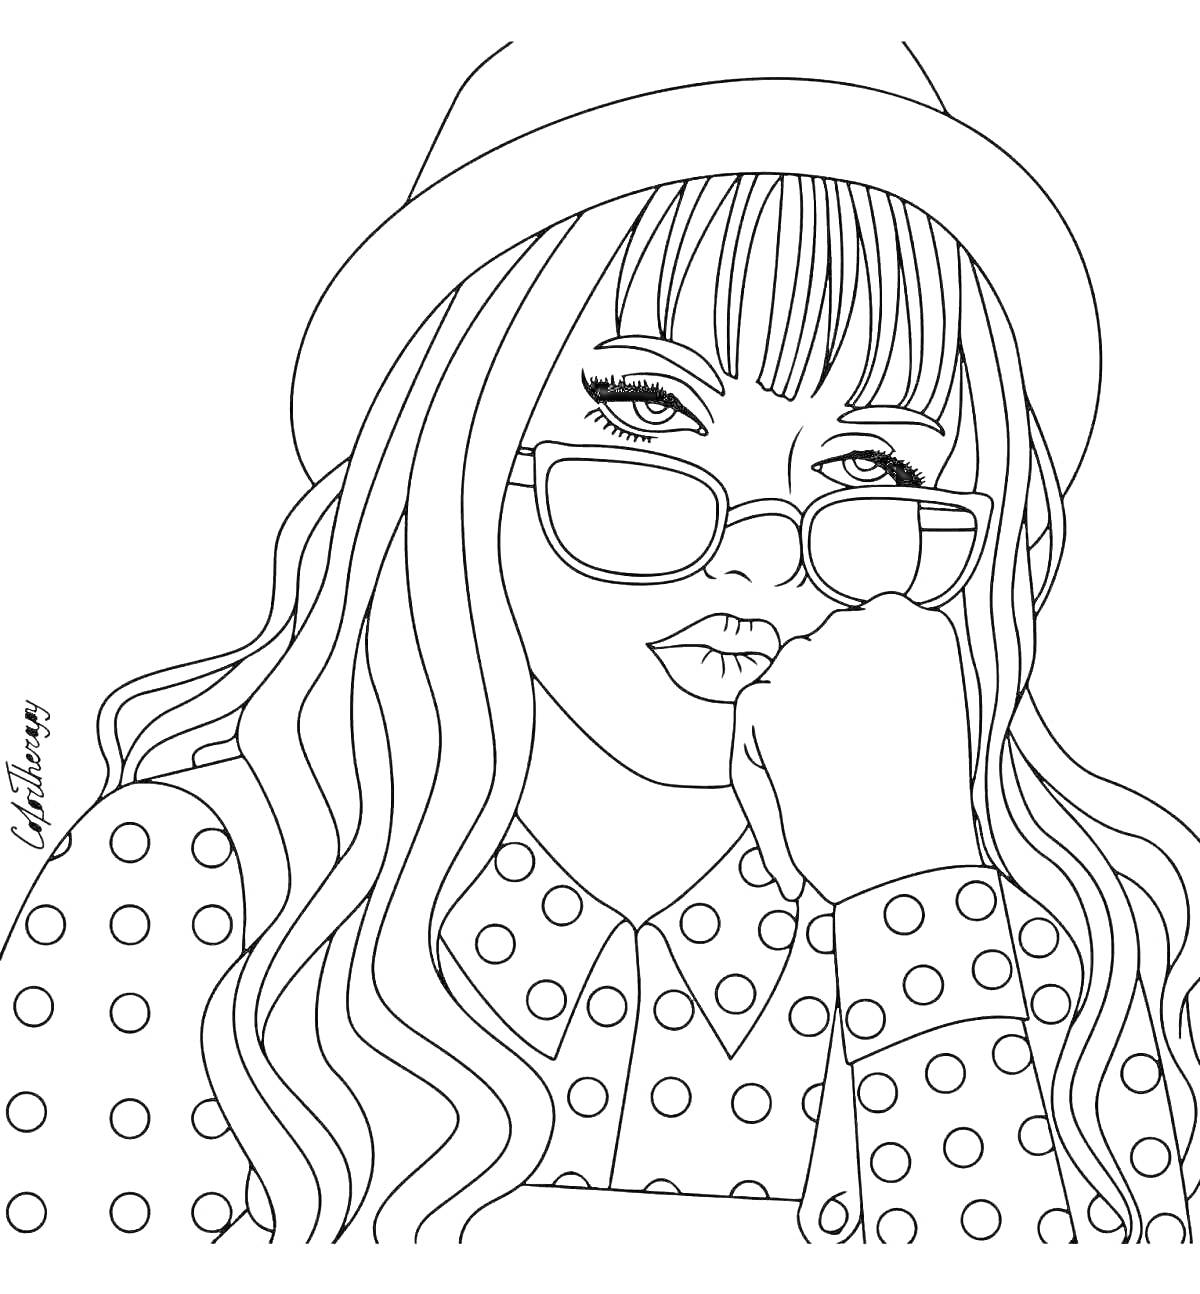 Раскраска Девушка в шляпе, с длинными волосами, очками, в блузке в горошек с воротником